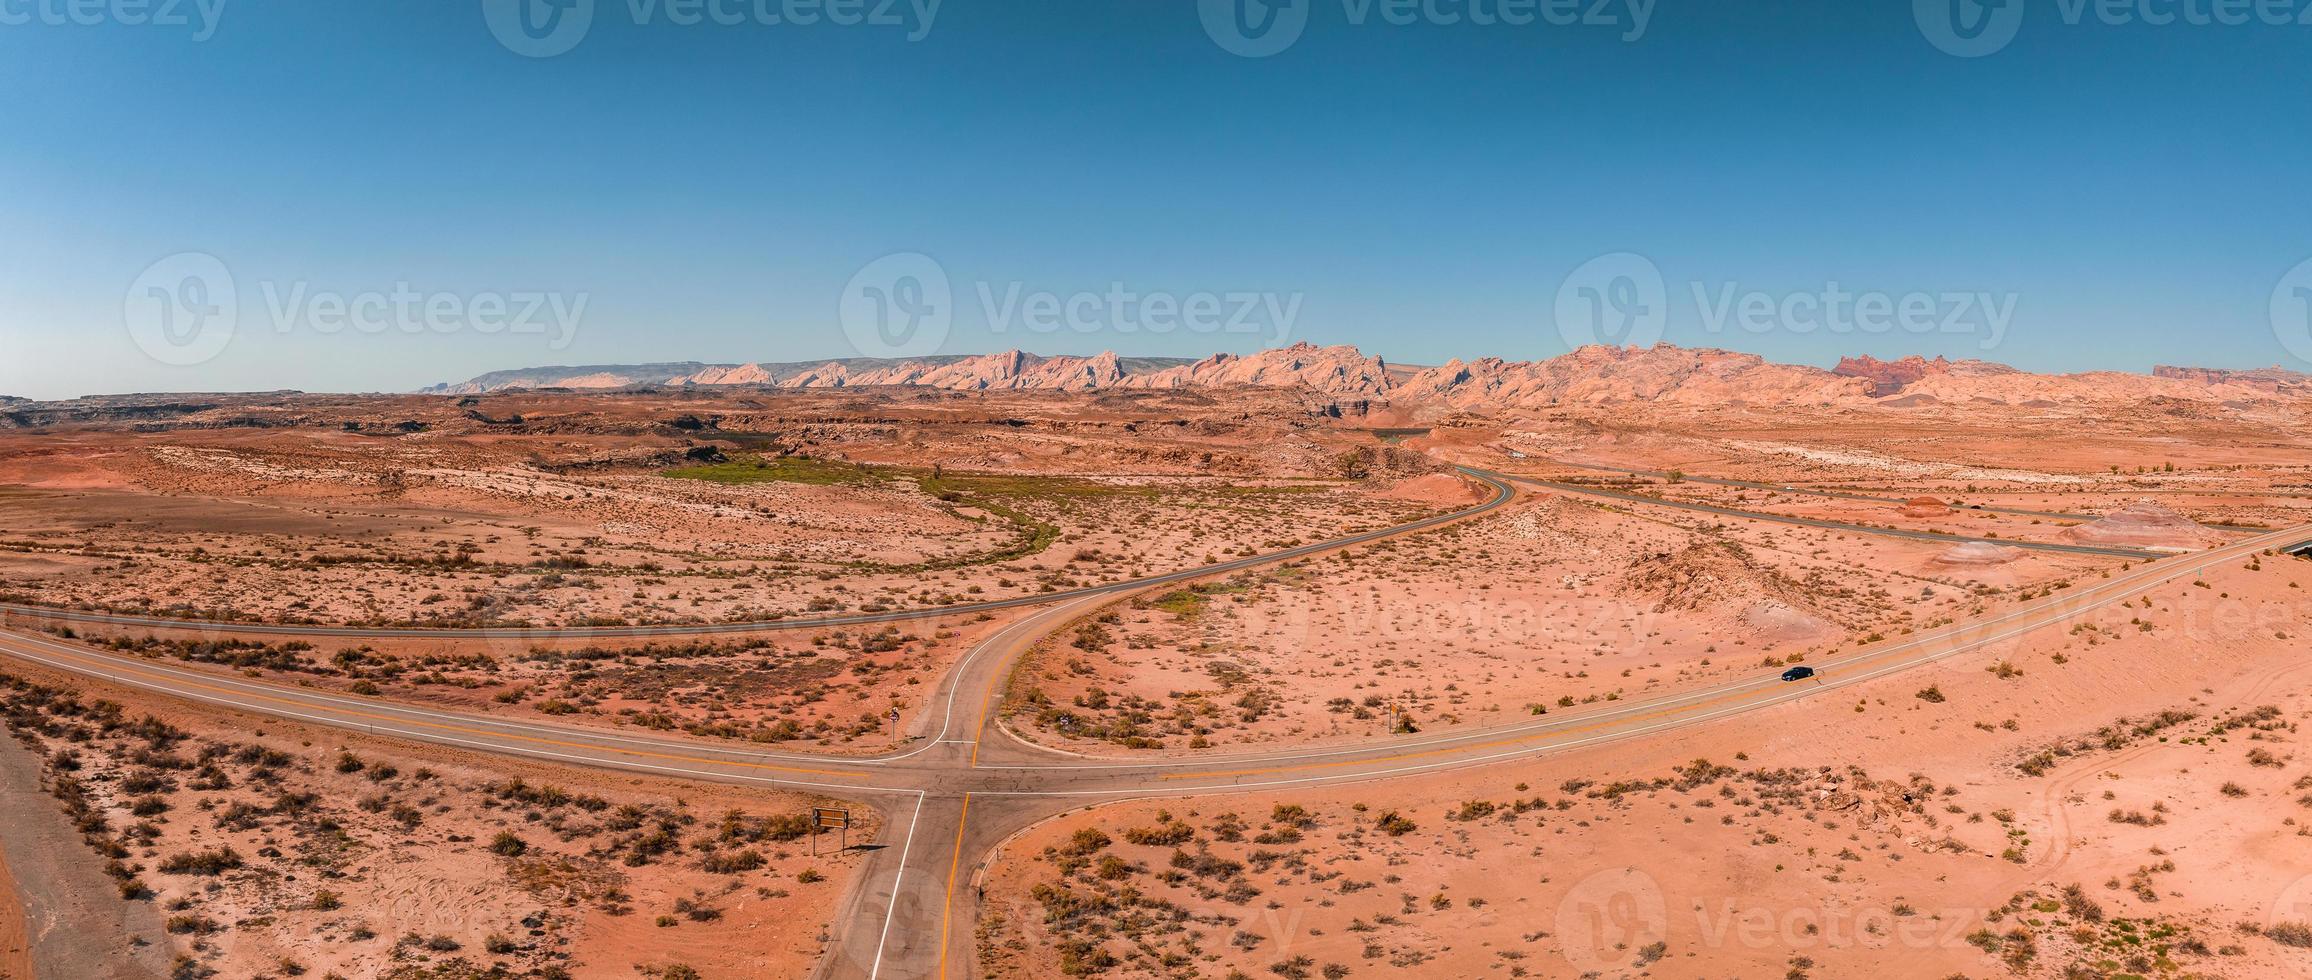 imagem panorâmica de uma estrada solitária e aparentemente interminável no deserto do sul do arizona. foto